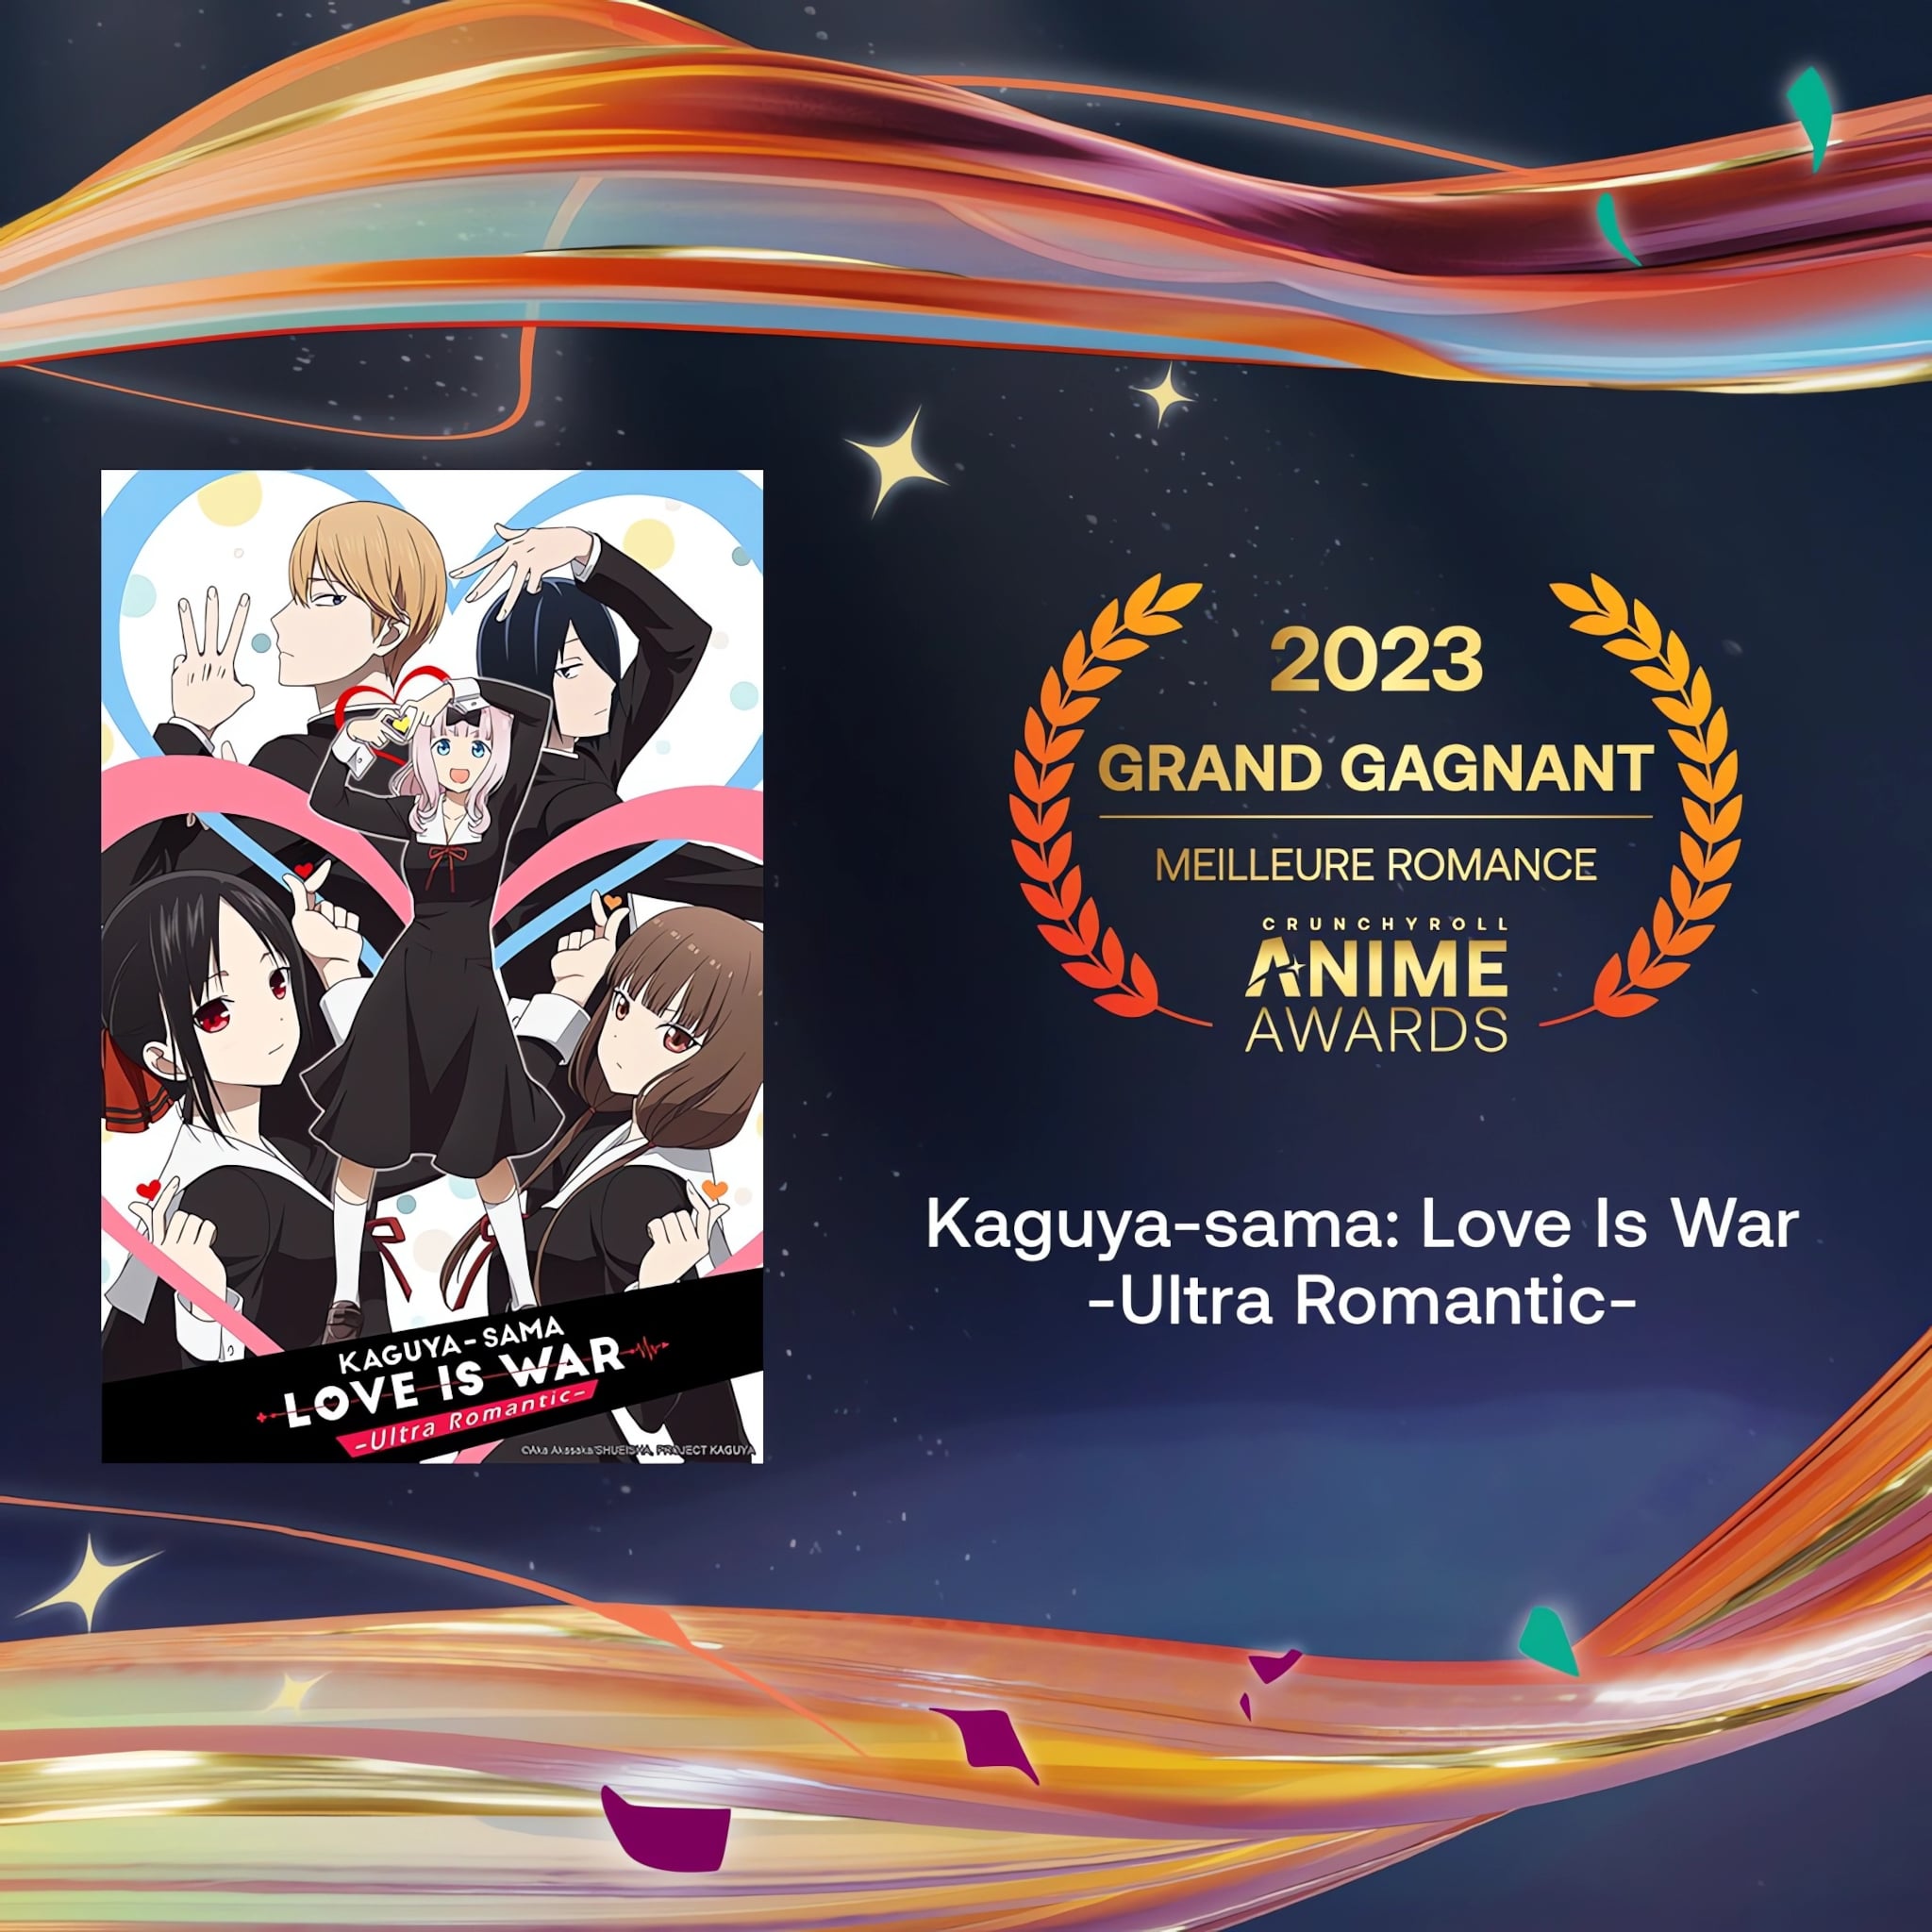 Prix de la meilleure romance pour les Crunchyroll Anime Awards 2023